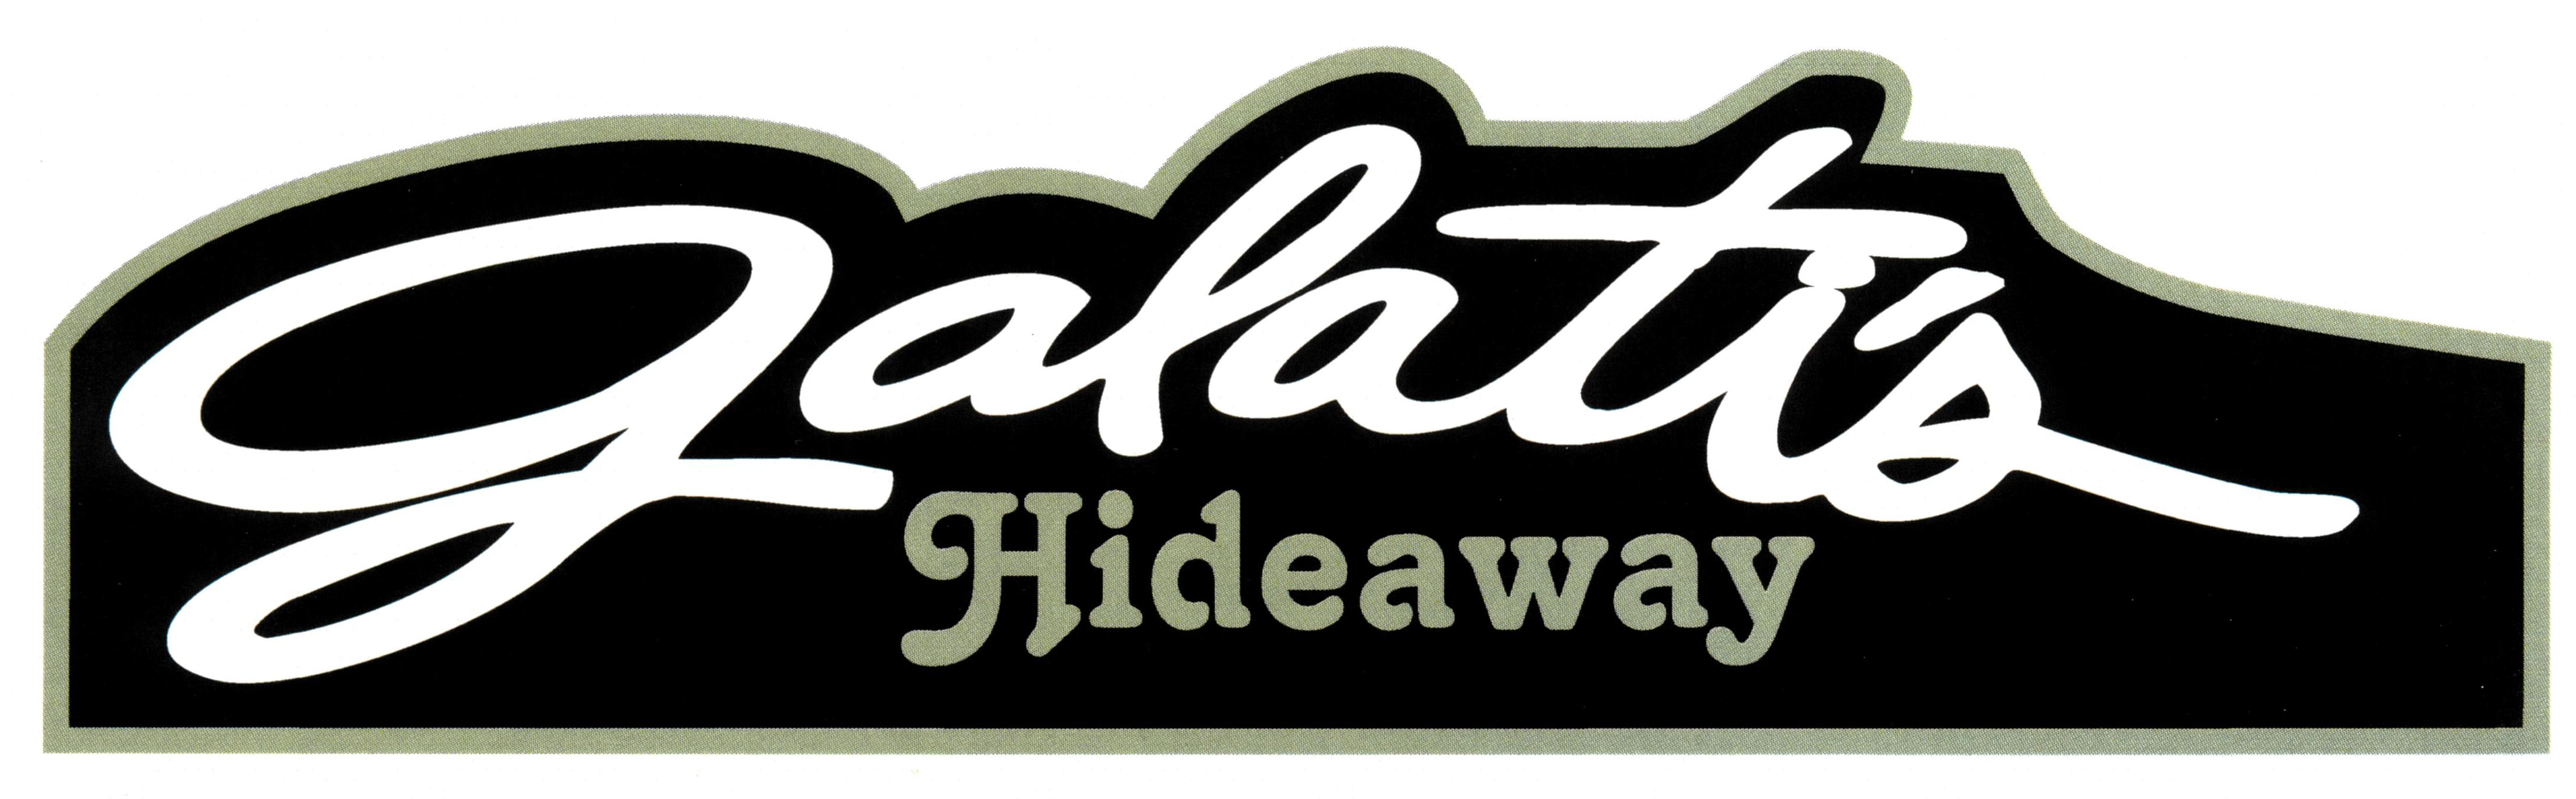 Galati's Hideaway - Homepage